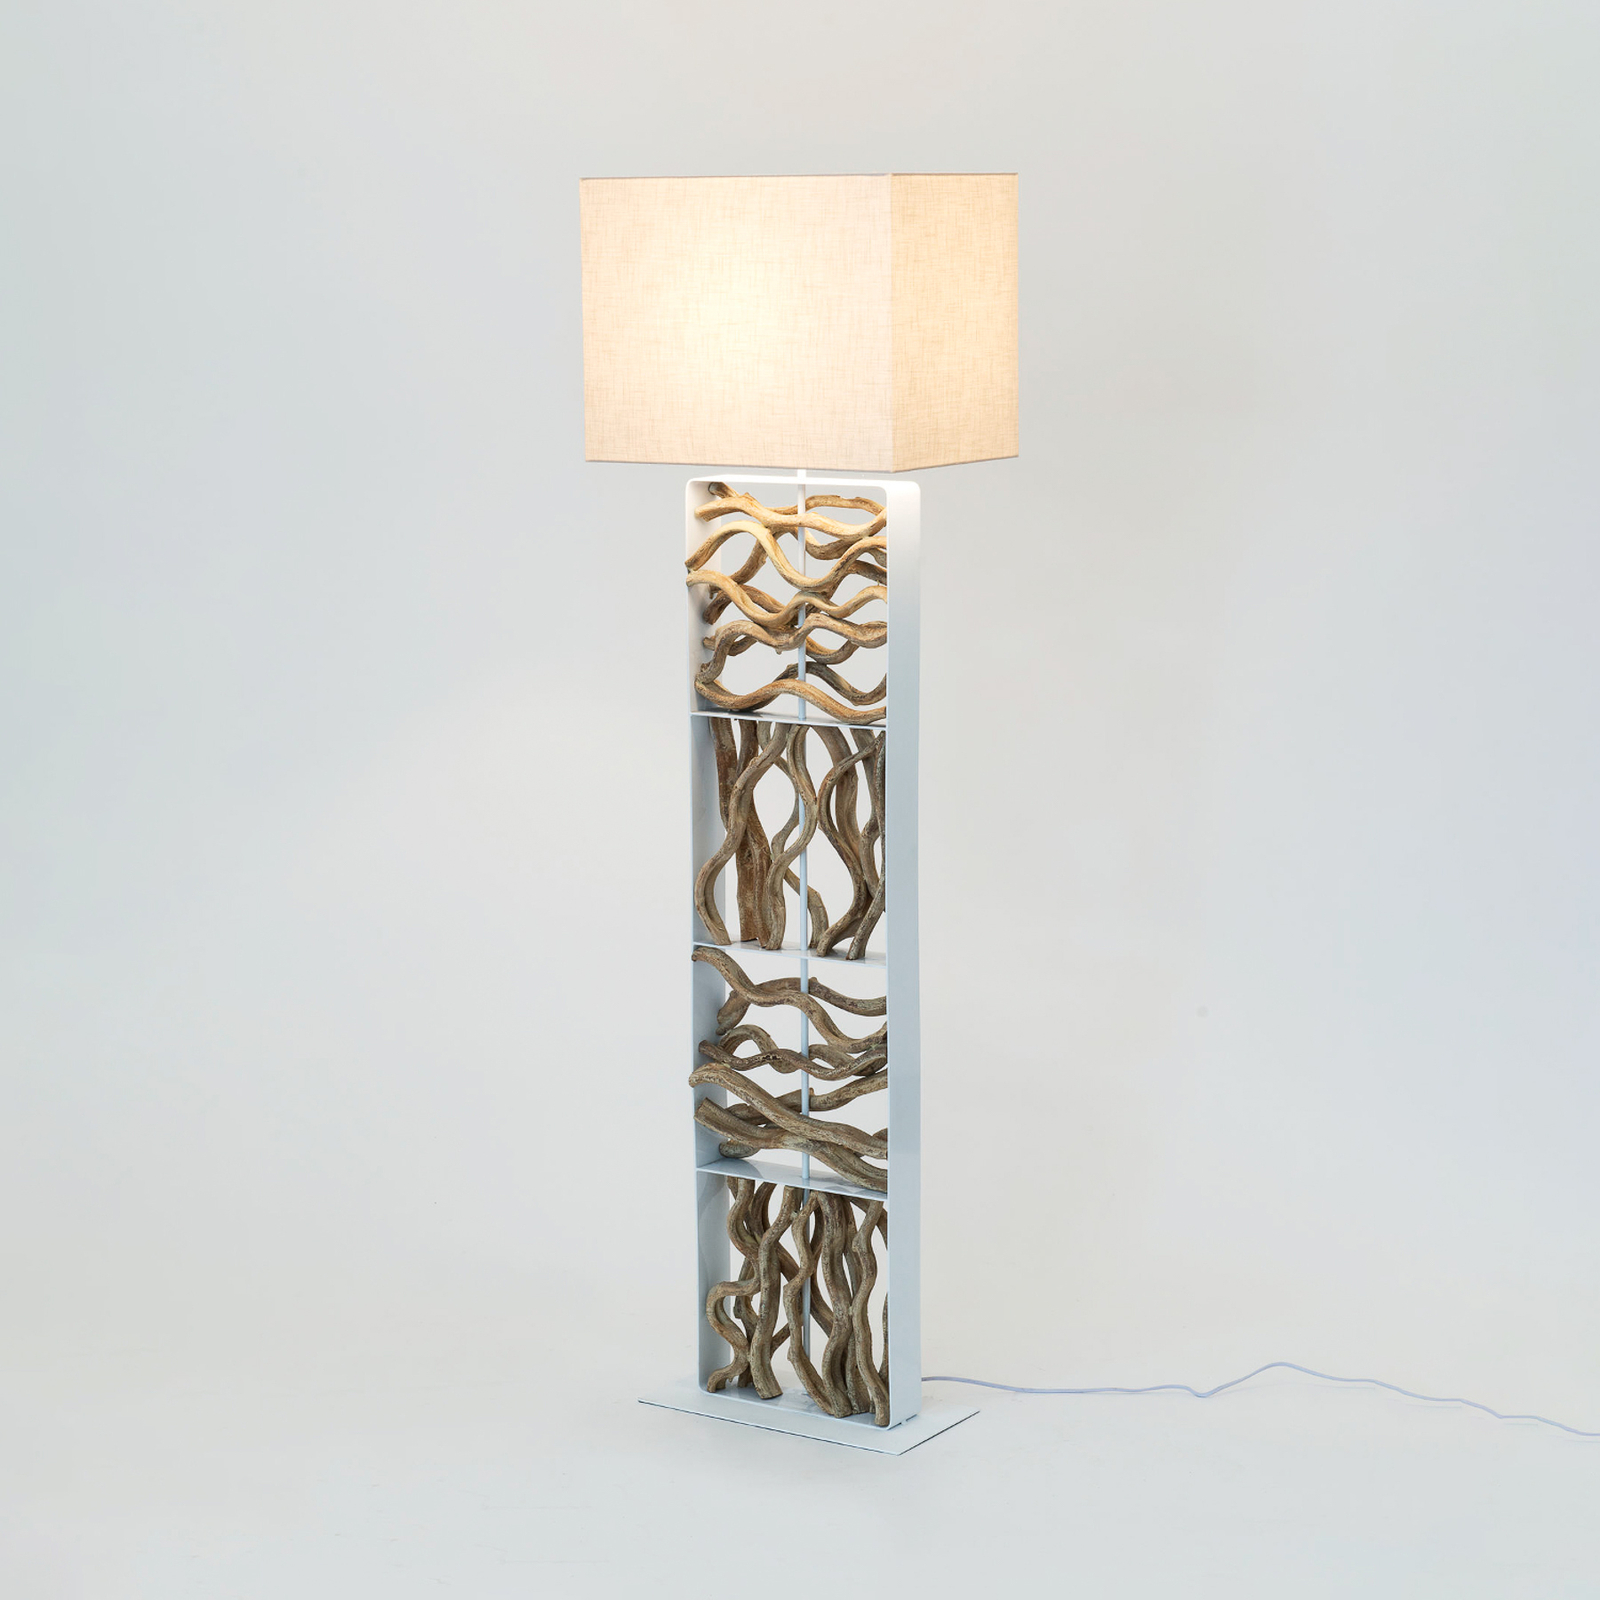 Lampe sur pied Tremiti, couleur bois/beige, hauteur 160 cm, bois